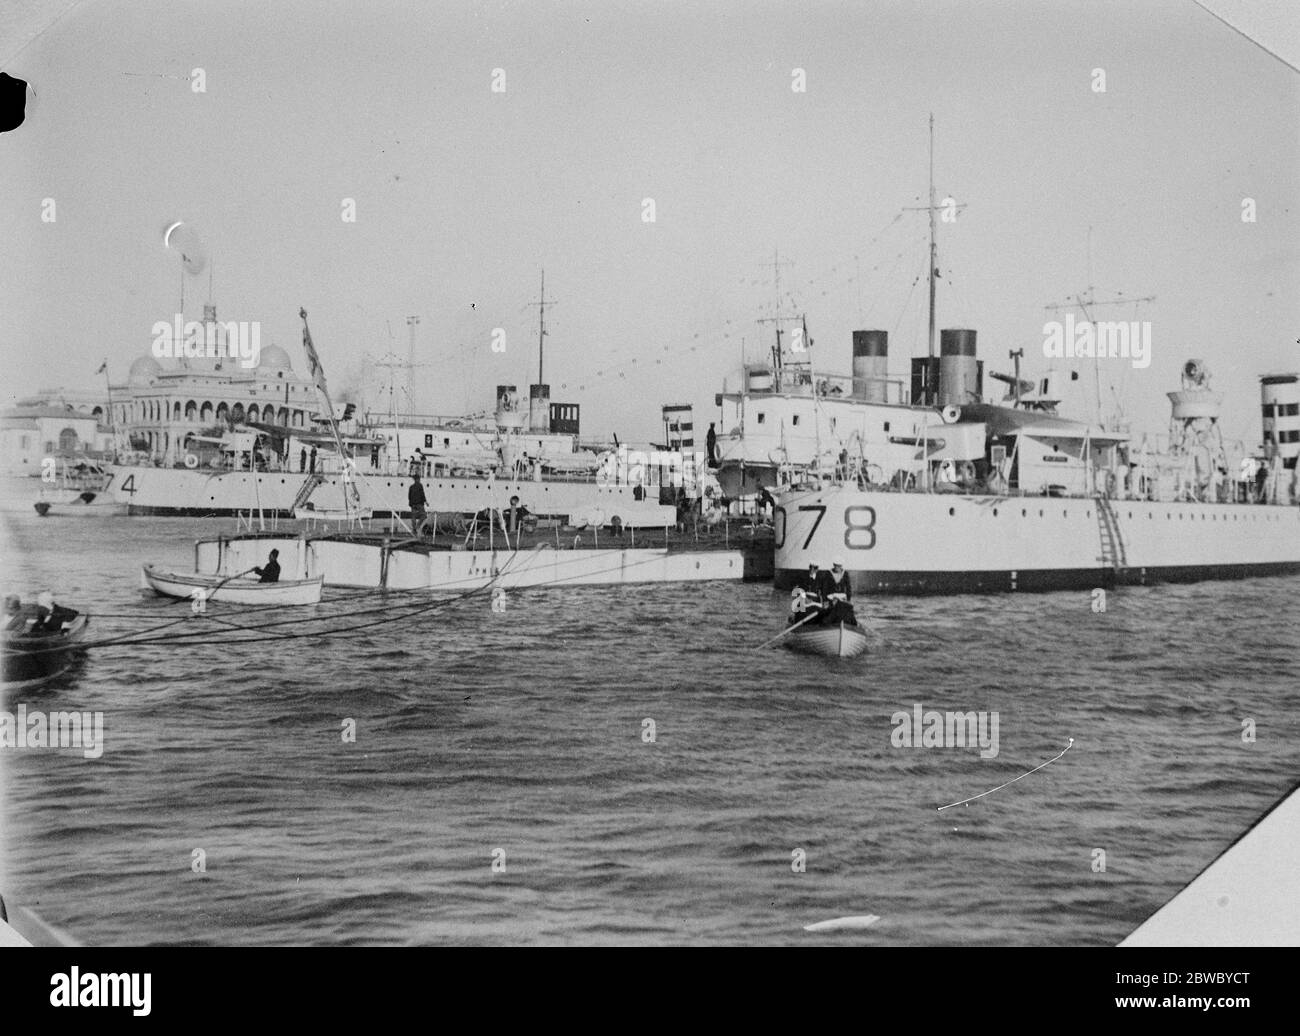 Britische Kriegsschiffe auf dem Weg nach China. HMS Aphis, Fluss Kanonenboot, neben ihrer Eskorte, der Zerstörer Wolverine, in Port sagte auf dem Weg nach China. Hinter ihr sind die Marienkäfer und Wanderer, die auf dem Weg nach Fernost sind. 28 Februar 1927 Stockfoto